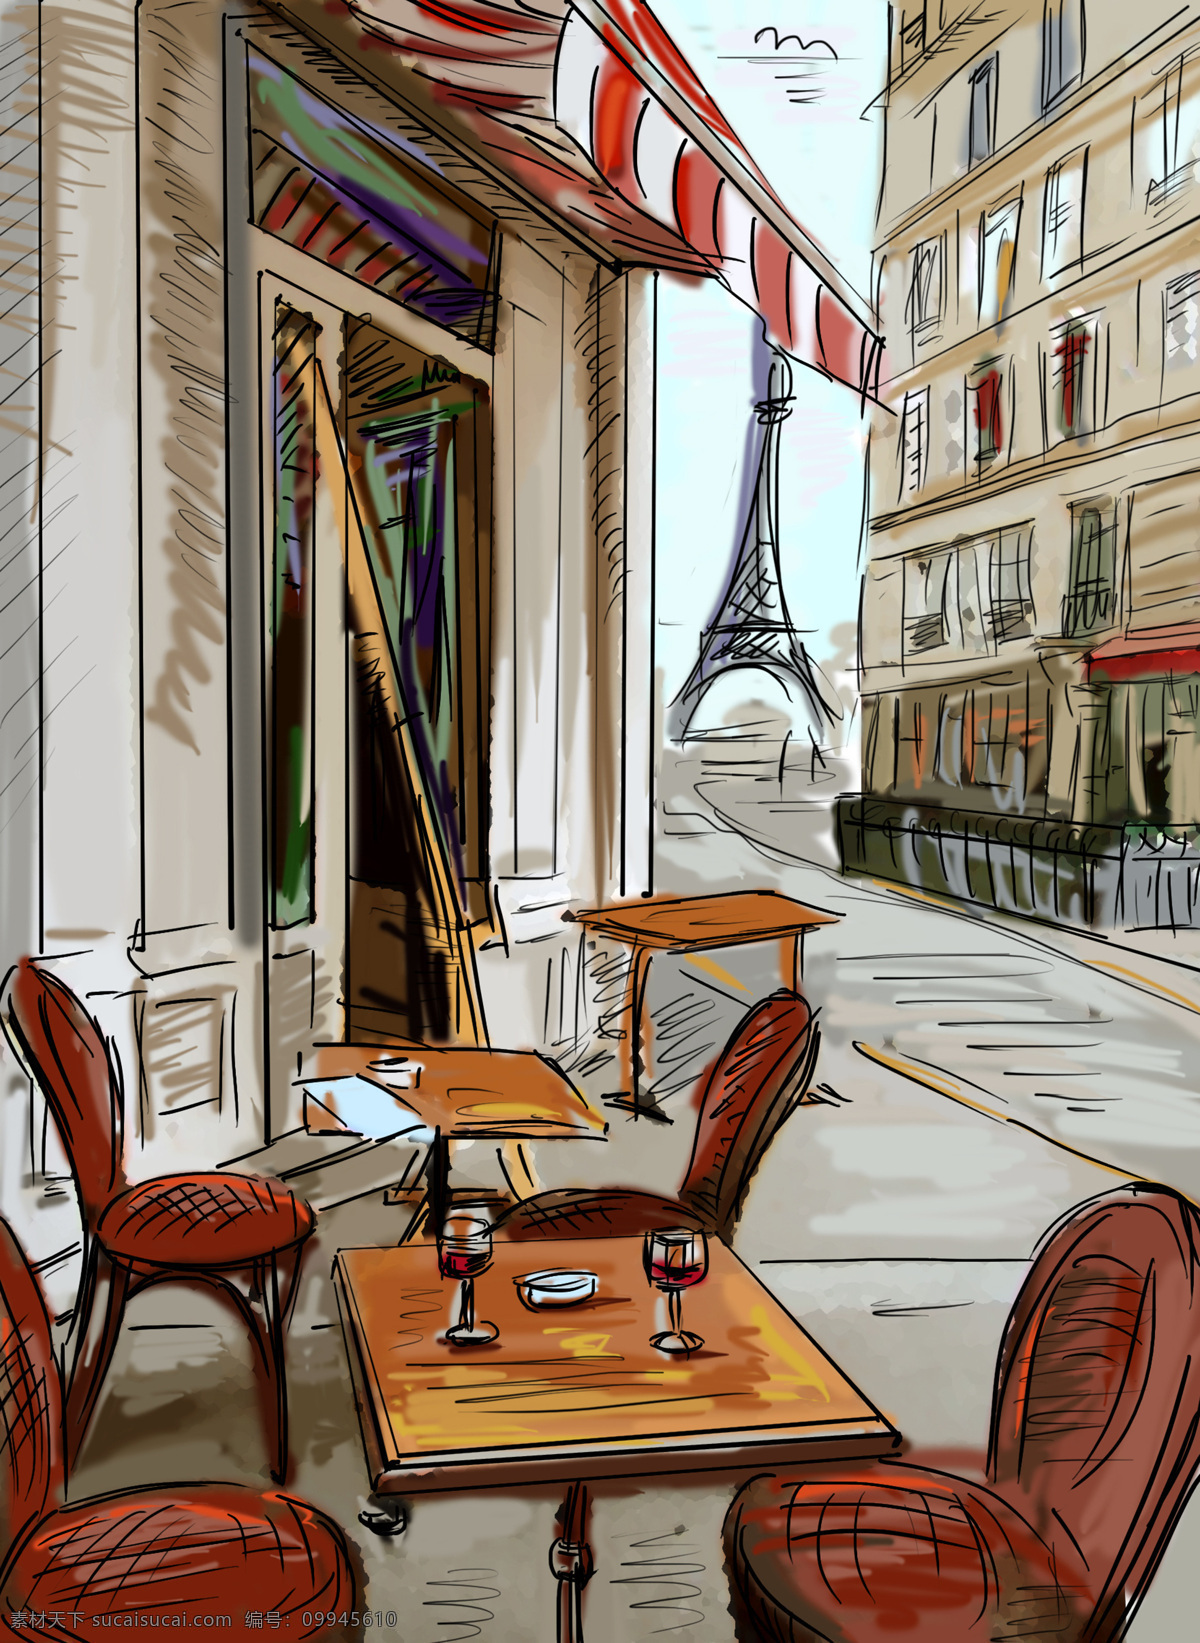 手绘 巴黎 风景 插画 巴黎风景插画 手绘风景 埃菲尔铁塔 巴黎街头风景 街道 城市风光 环境家居